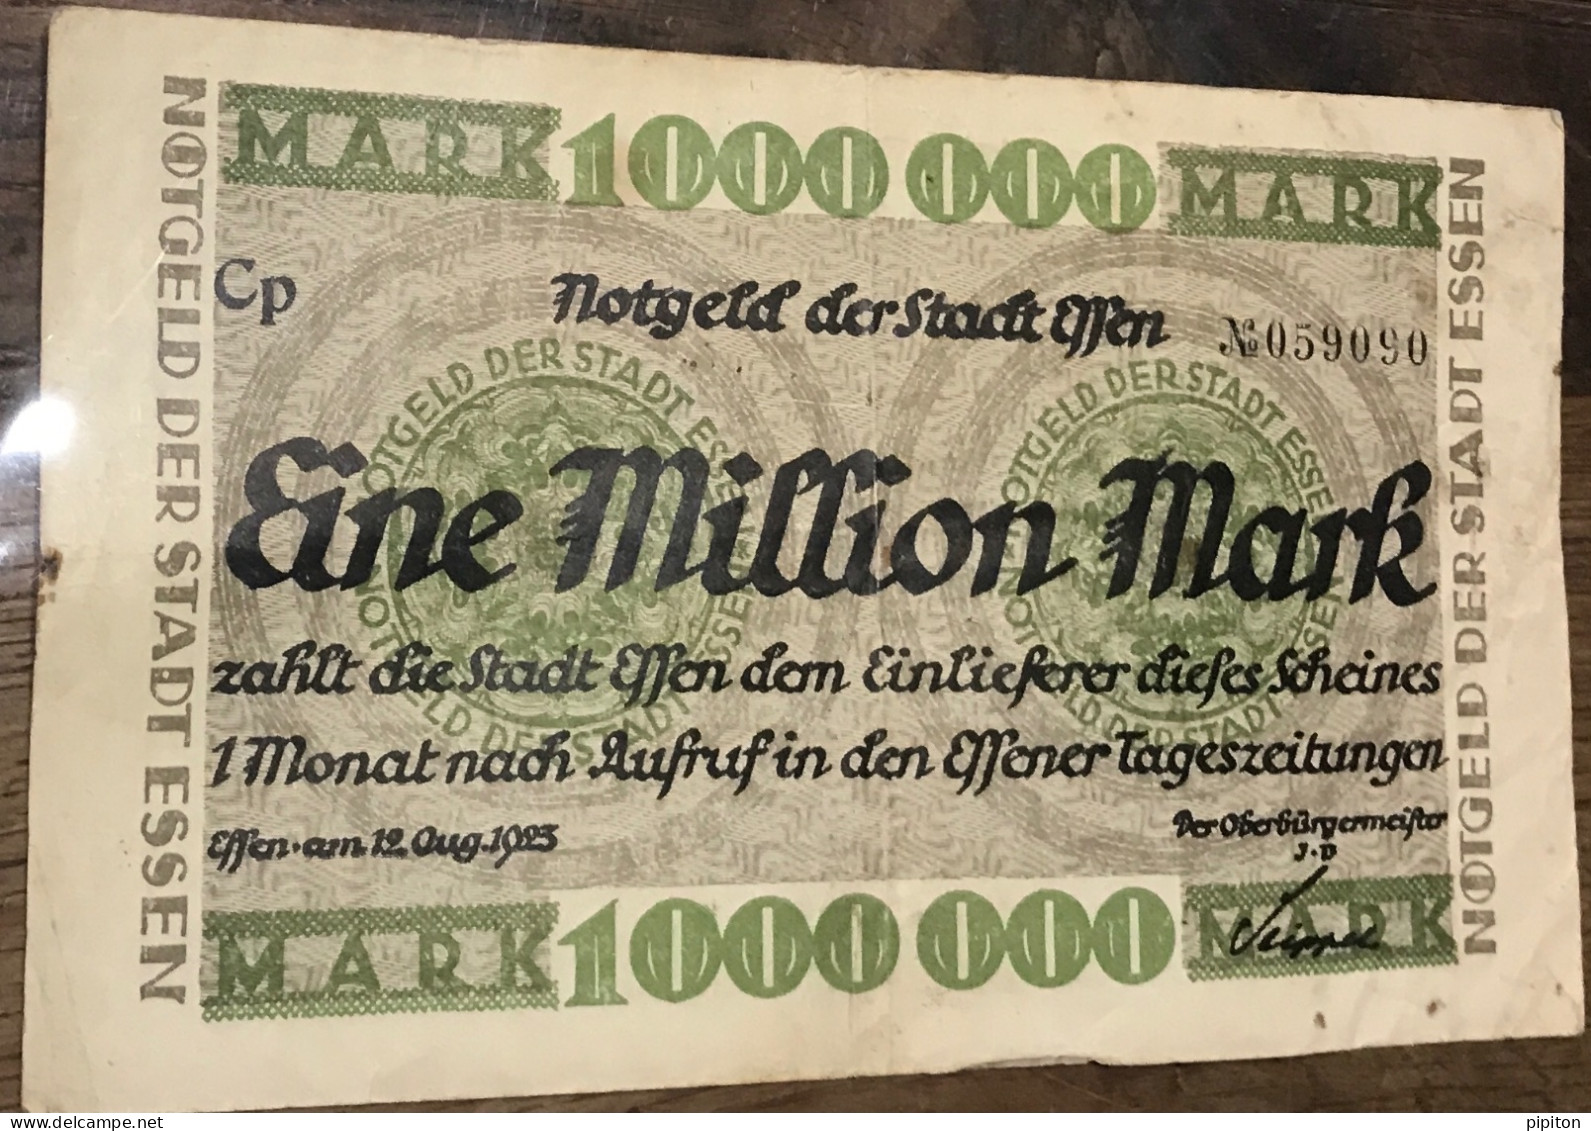 Billet 1 Million De Marks Essen 1923 - Ohne Zuordnung